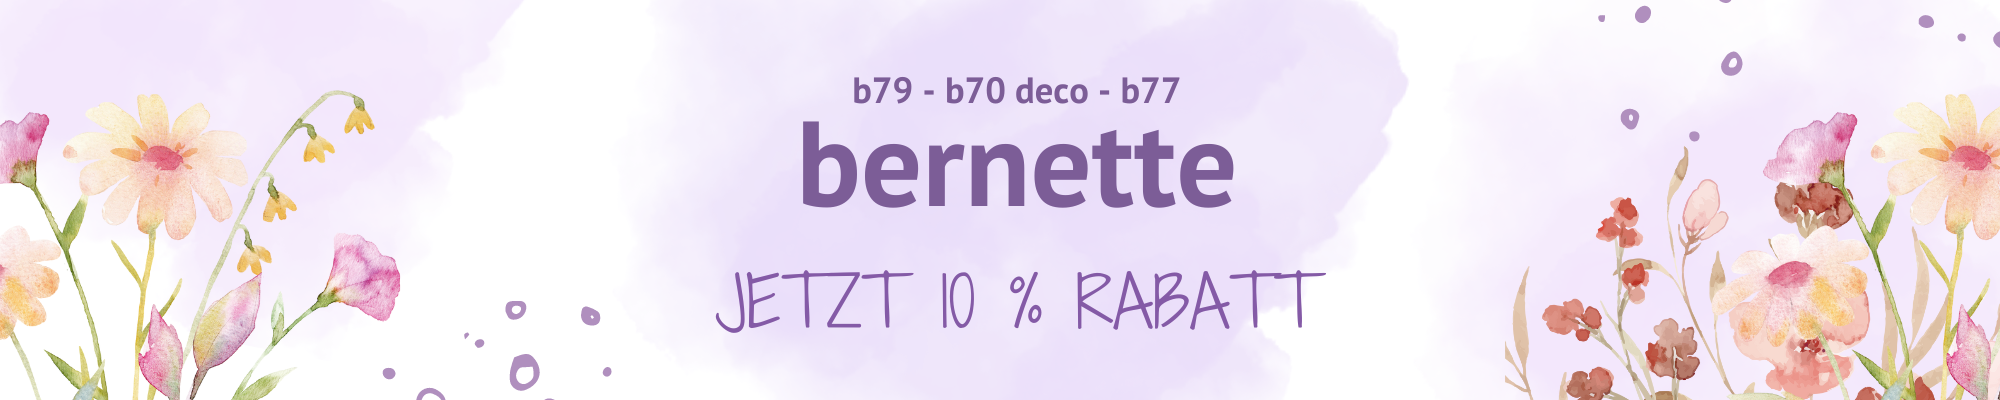 Banner 10% bernette